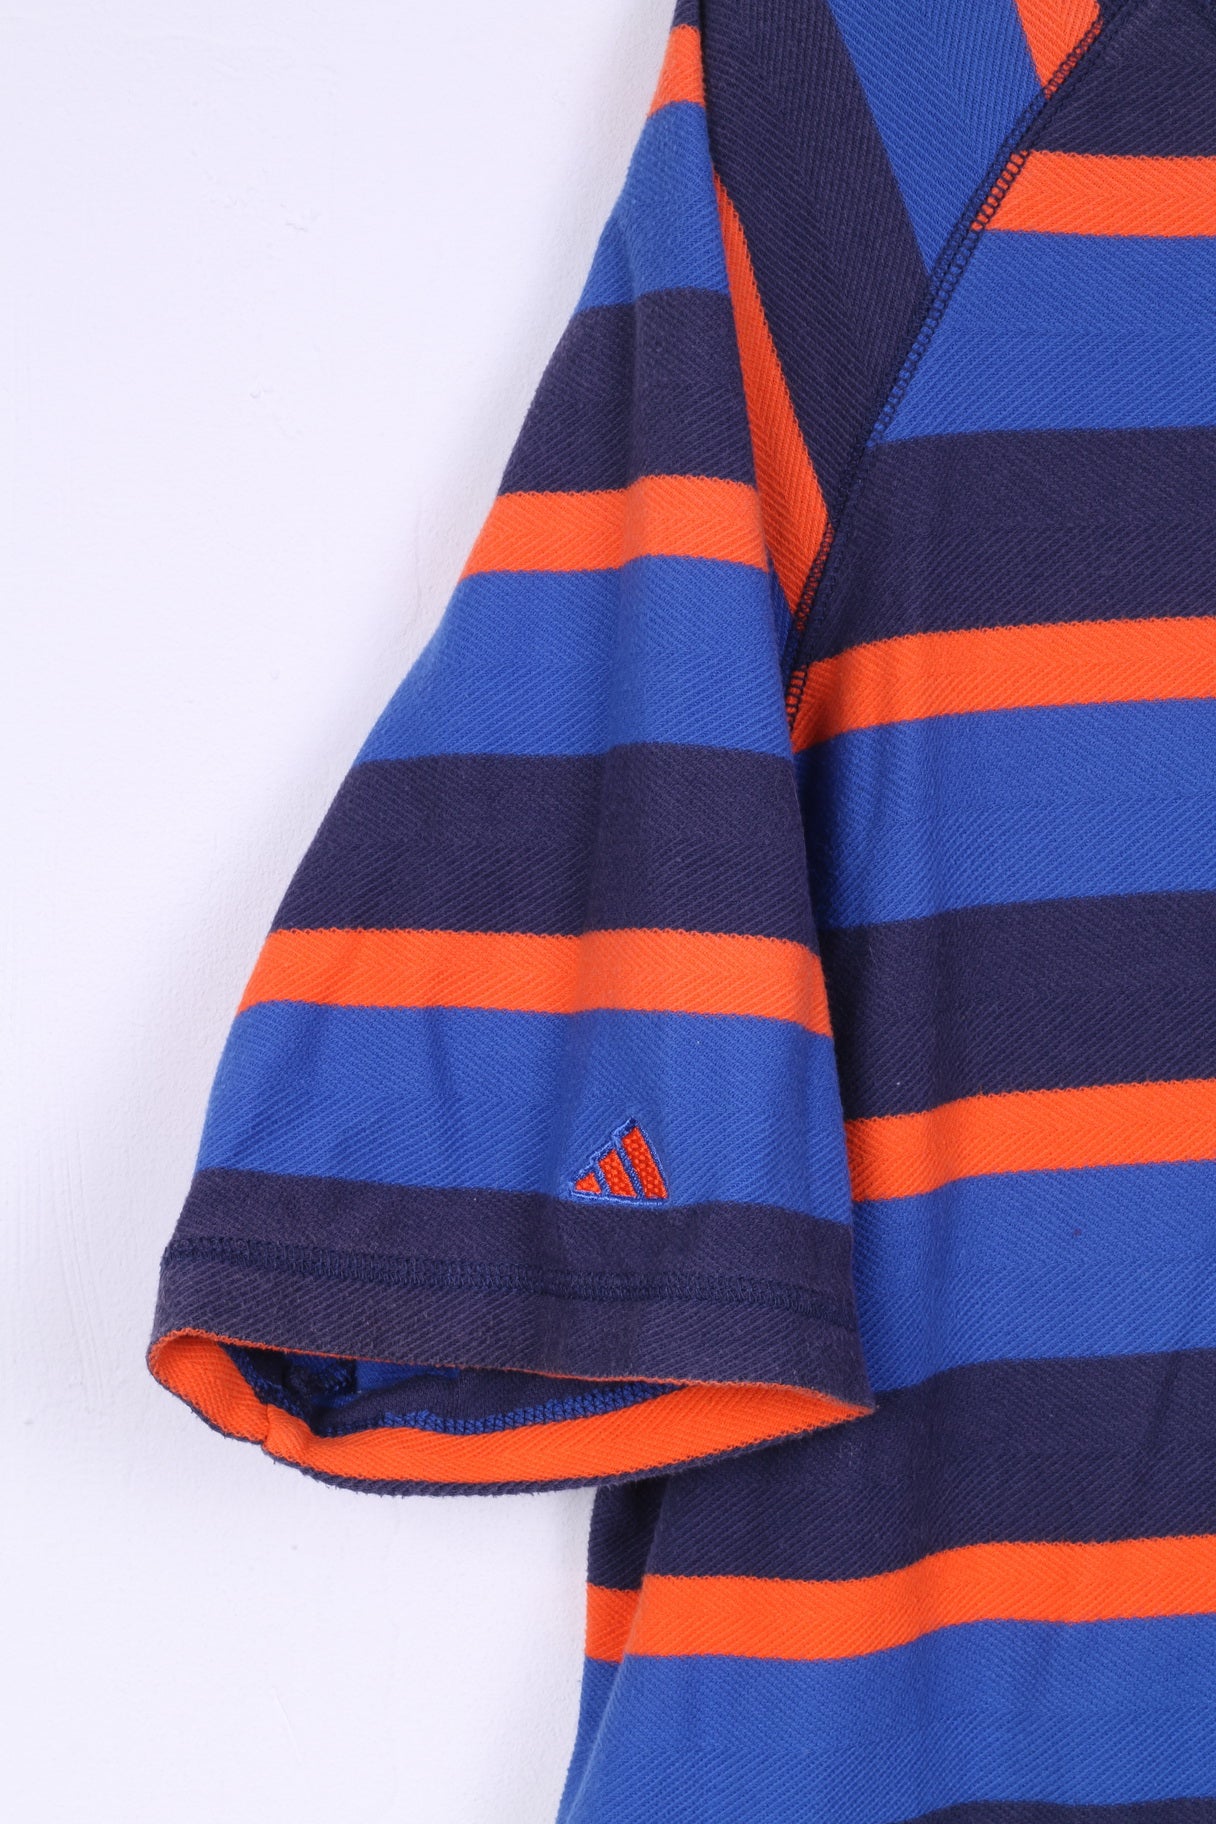 Adidas Homme L Polo Bleu Marine Rayé Coton Manches Courtes Été Vintage